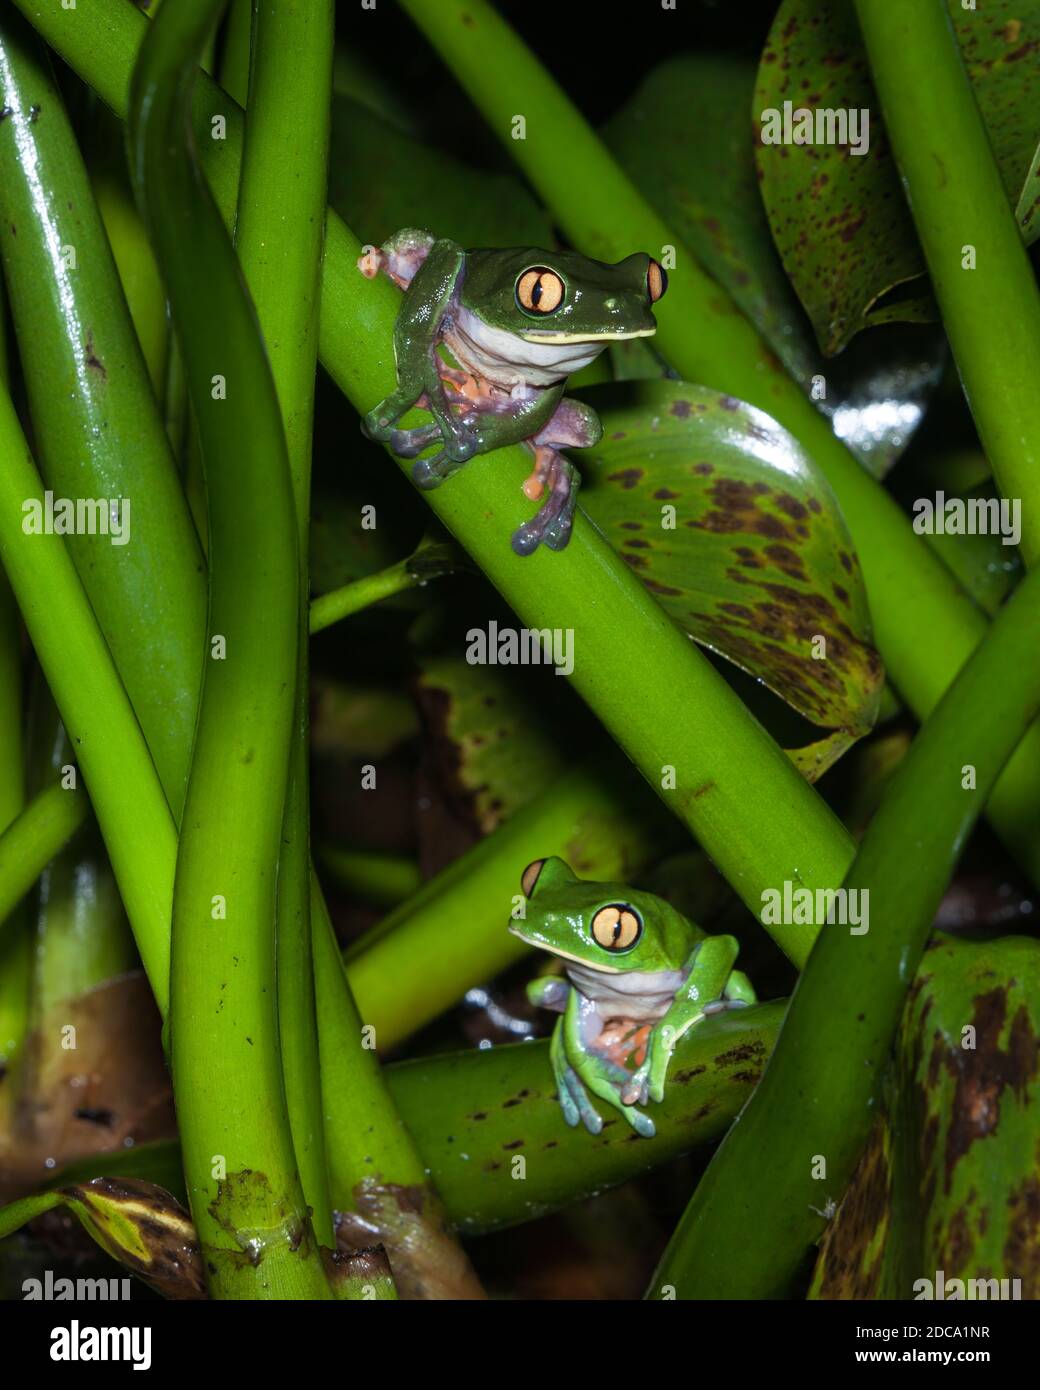 La grenouille à feuilles bleues, la grenouille à yeux jaunes ou la grenouille à yeux orange, Agalychnis annae, est une espèce en voie de disparition de grenouille nocturne au Costa Rica. Banque D'Images